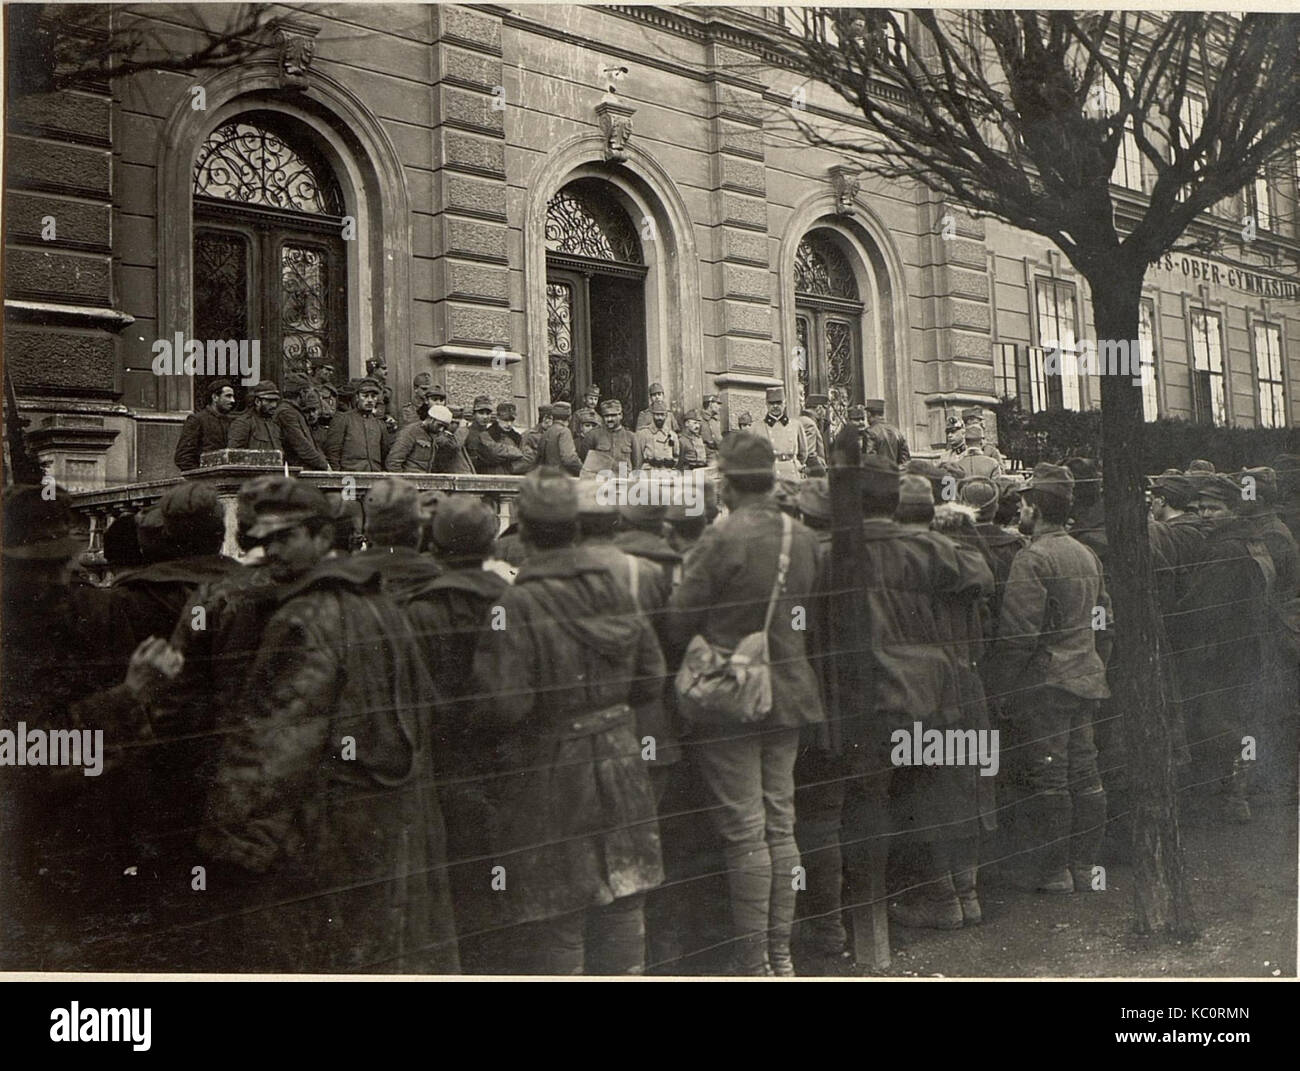 497 Mann, 16 Offiziere in Villach, die bei Santa Lucia am 17.III.1916 gefangen genommen wurden (BildID 15469992) Stock Photo